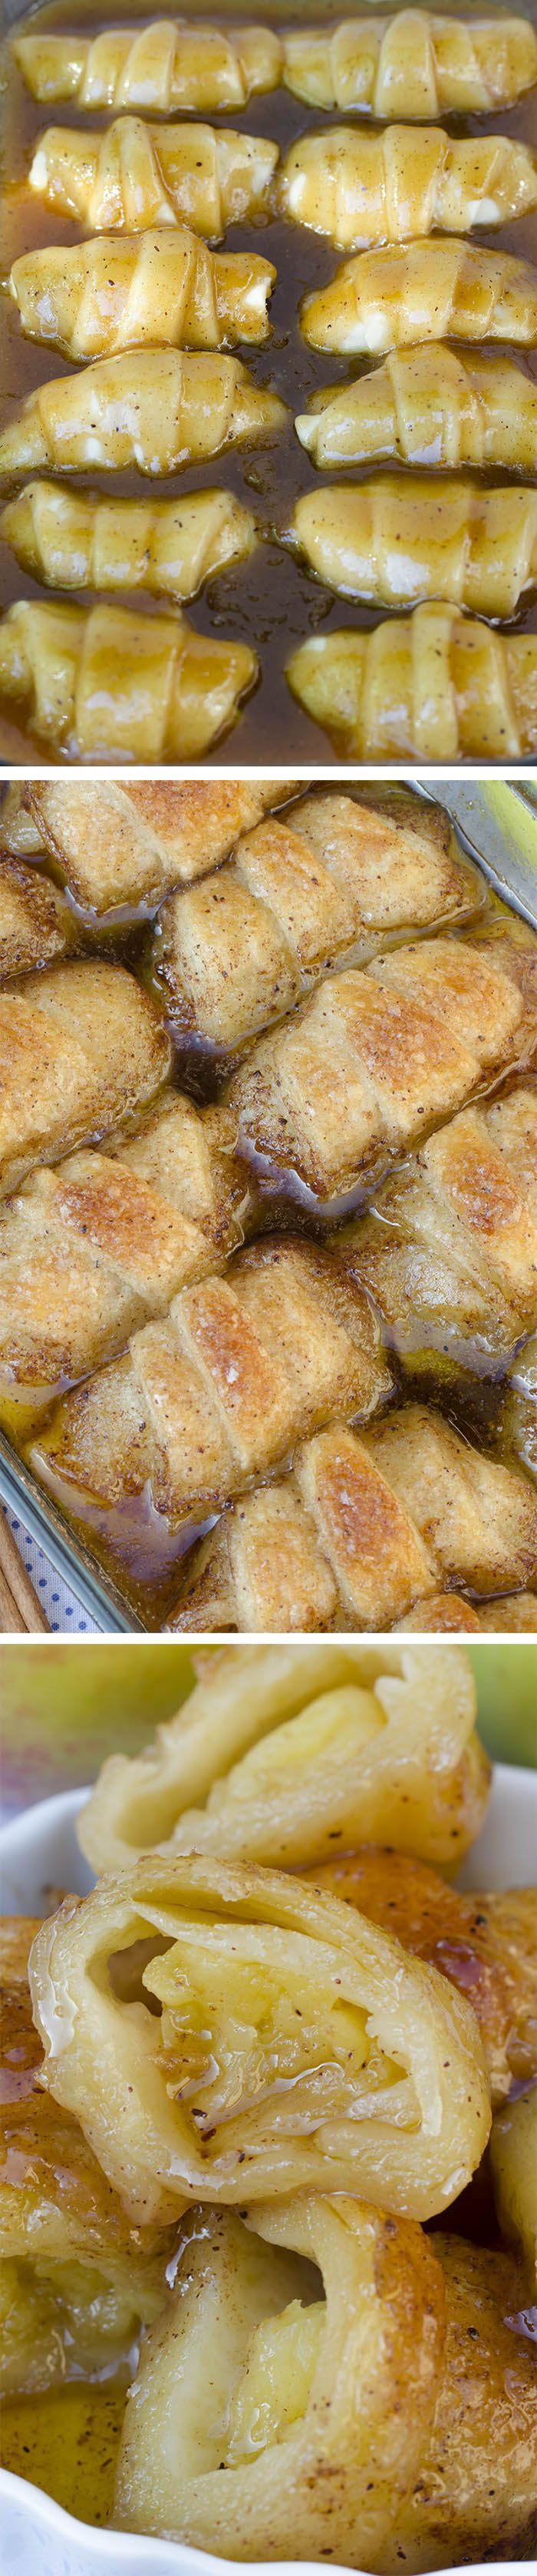 Easy Apple Dumplings Recipe – Awesome apple recipes that you love it . #apple #dumplings #recipes